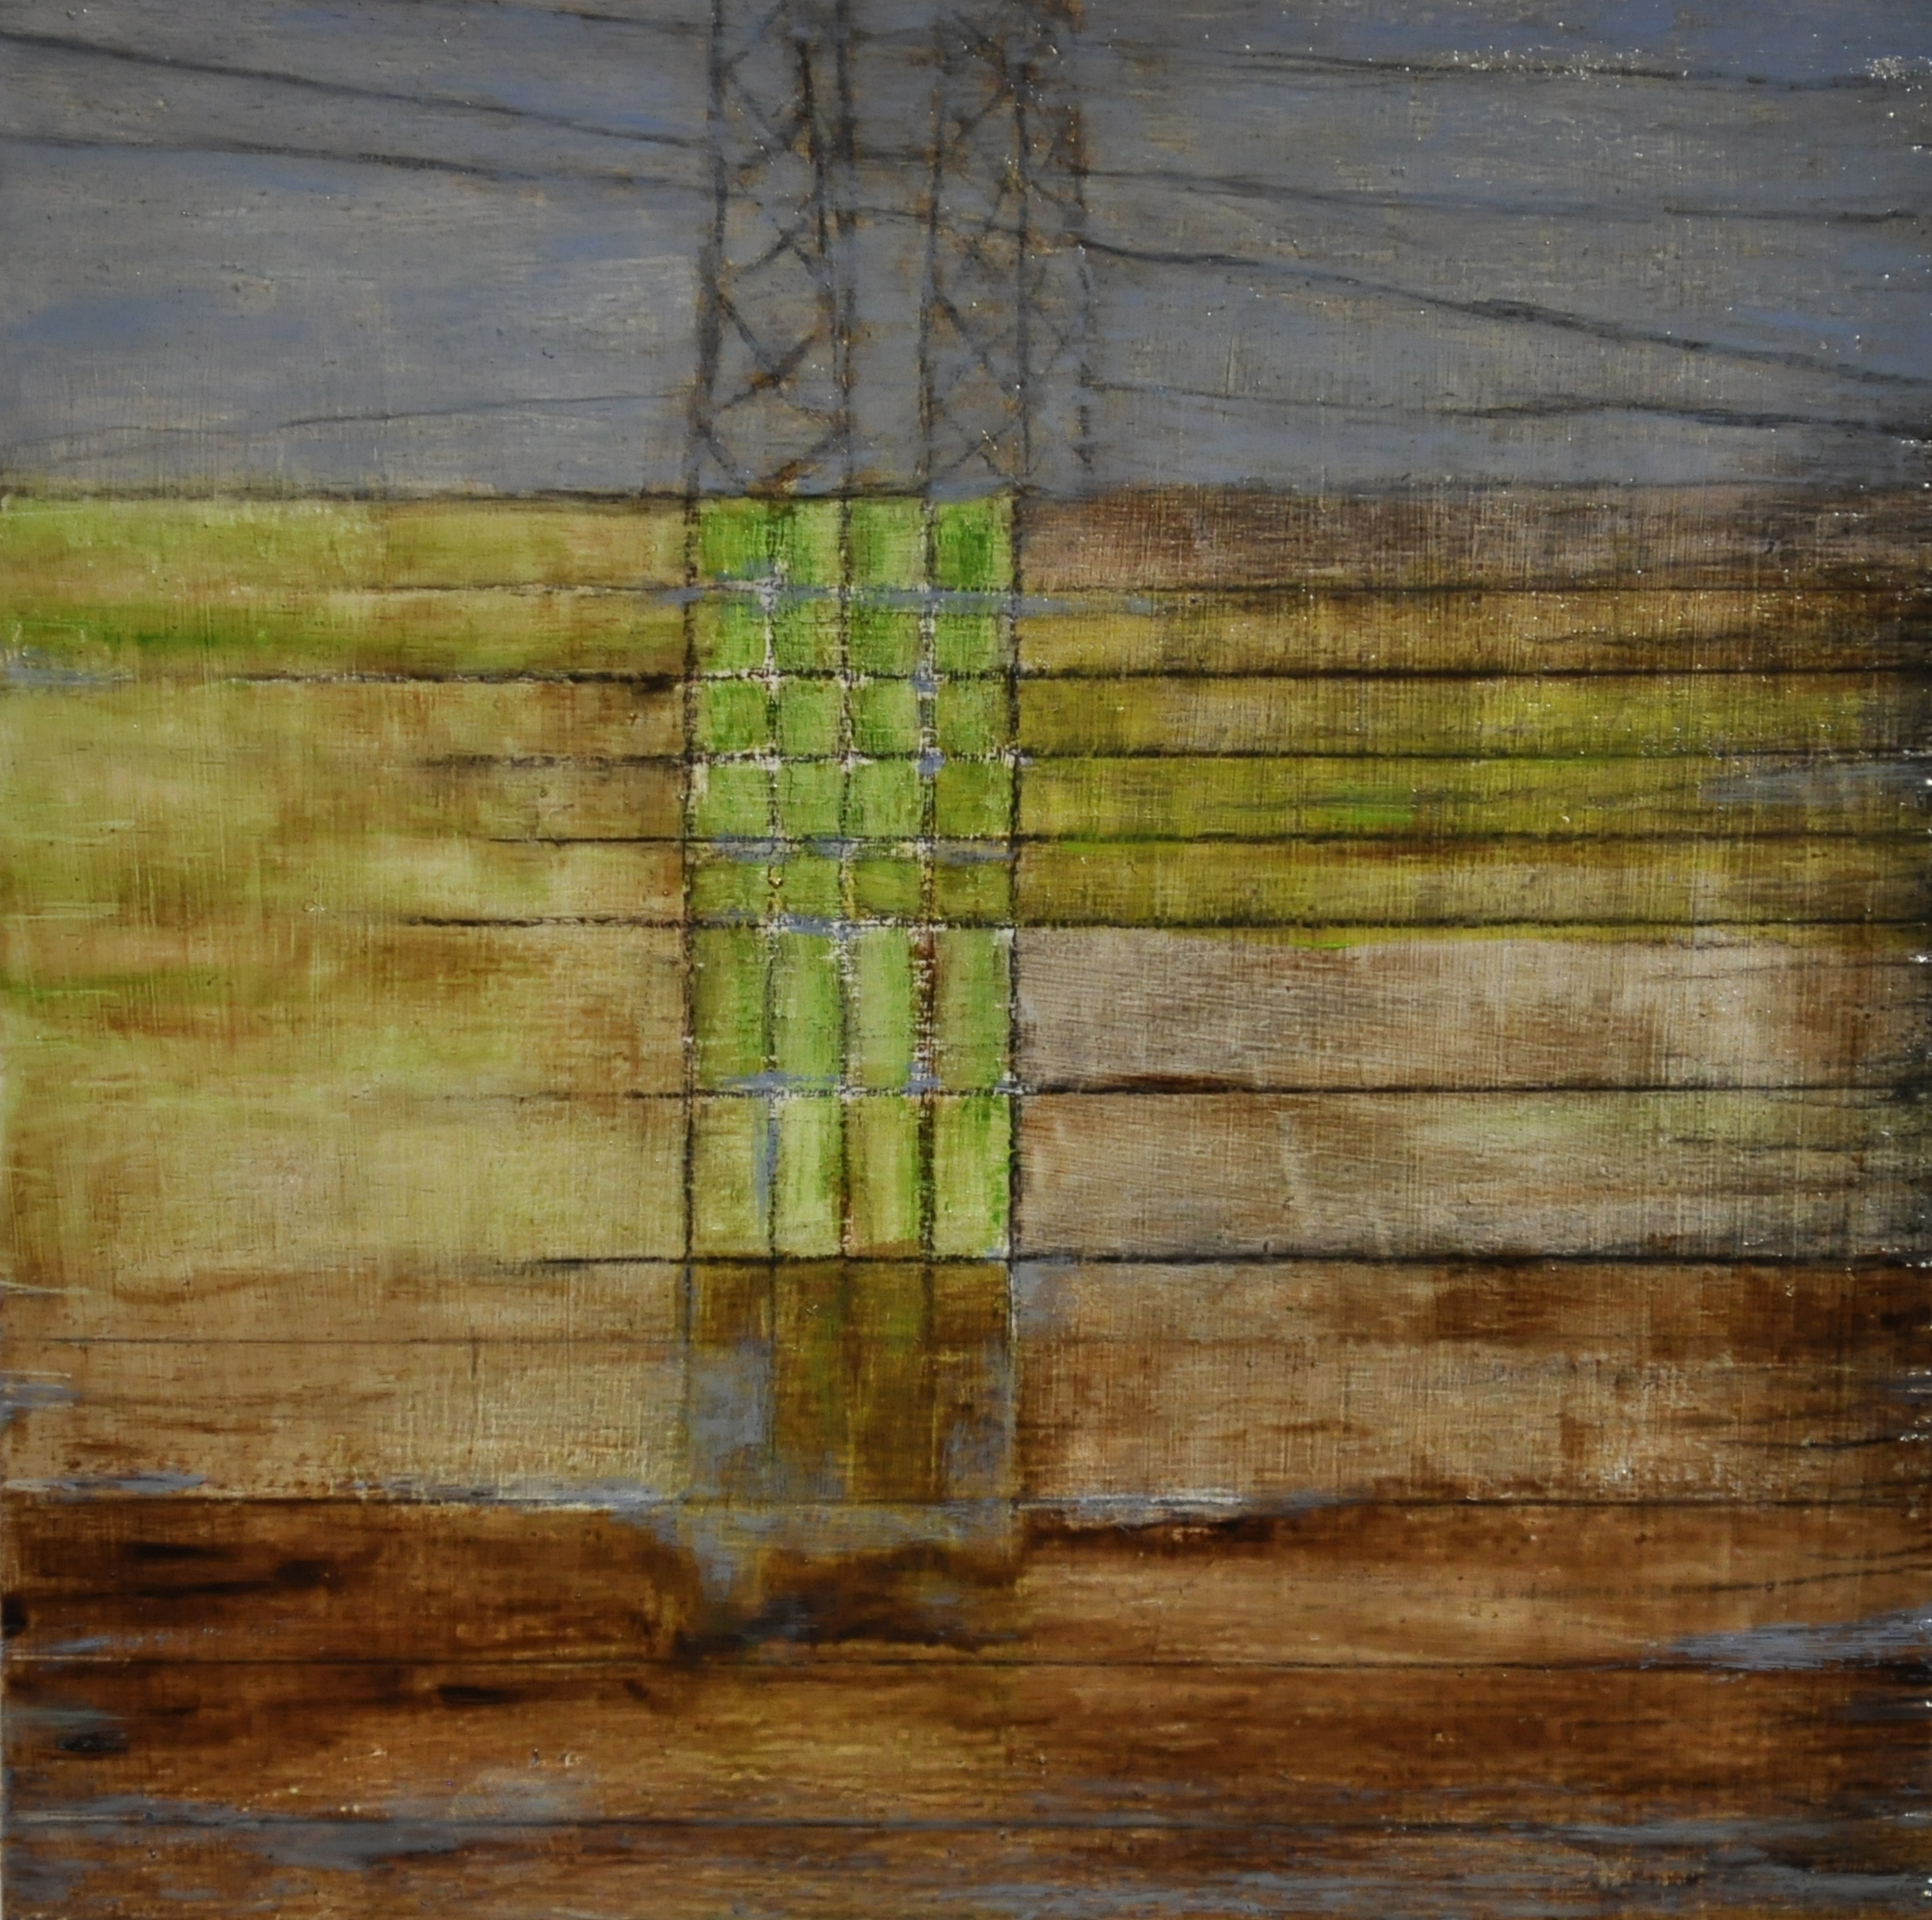  grid, 2017 oil on wood panel, 15 x 15 cm 